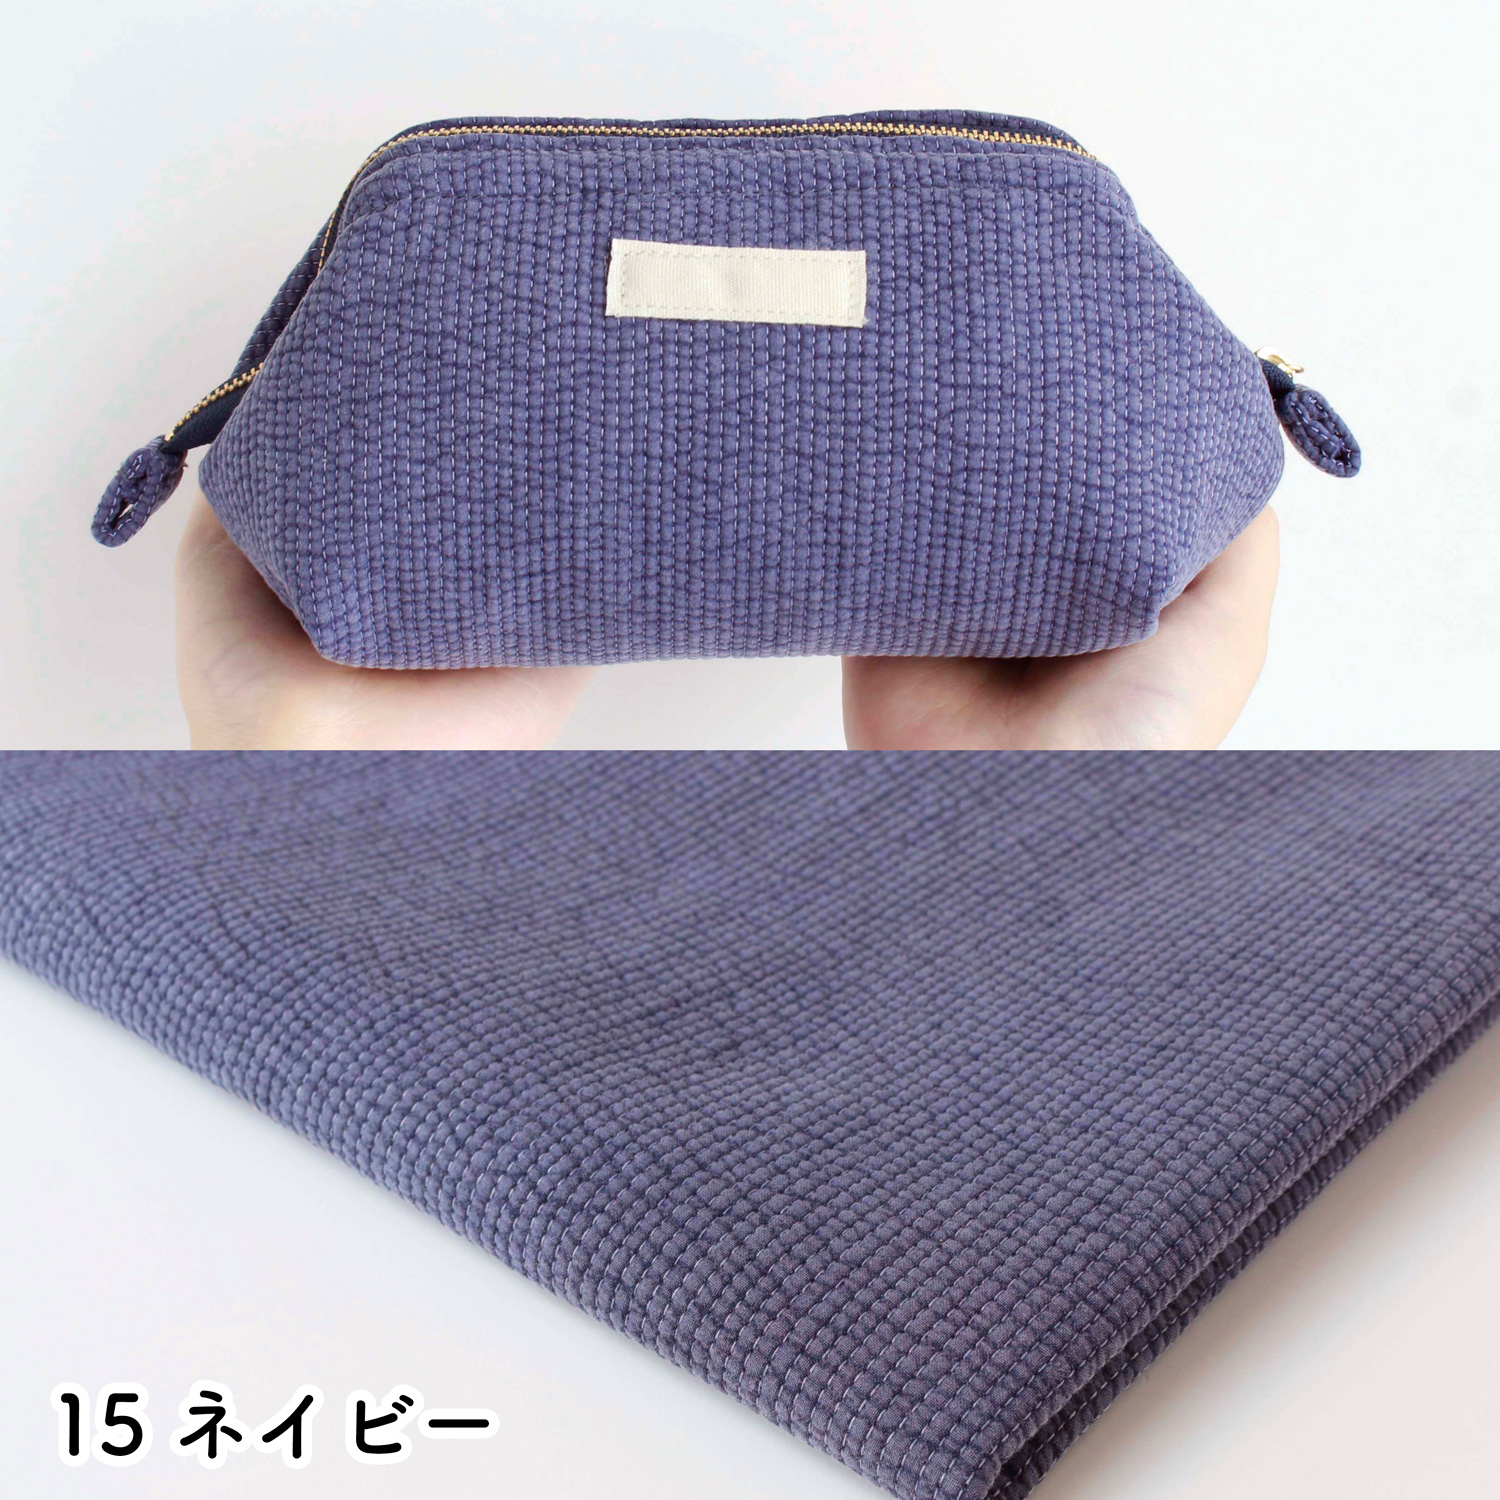 ■NBY303R nubi ヌビ 韓国伝統キルティング生地 巾3mmサイズ 原反約8m乱巻 (巻) 17